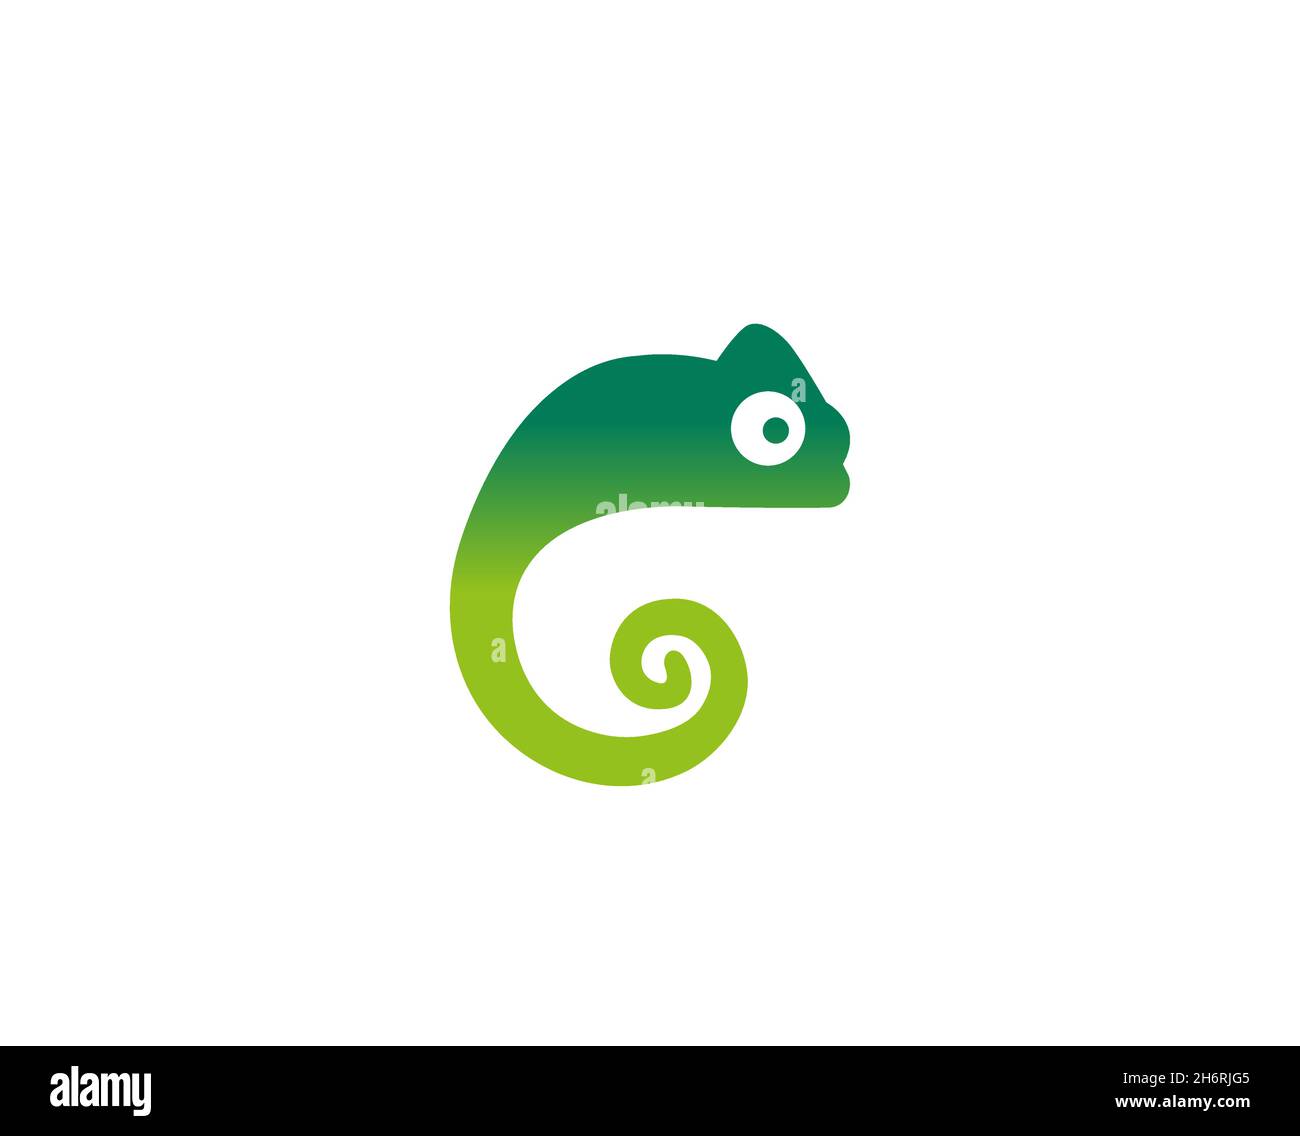 creative green chameleon logo vector design illustration Stock Vector